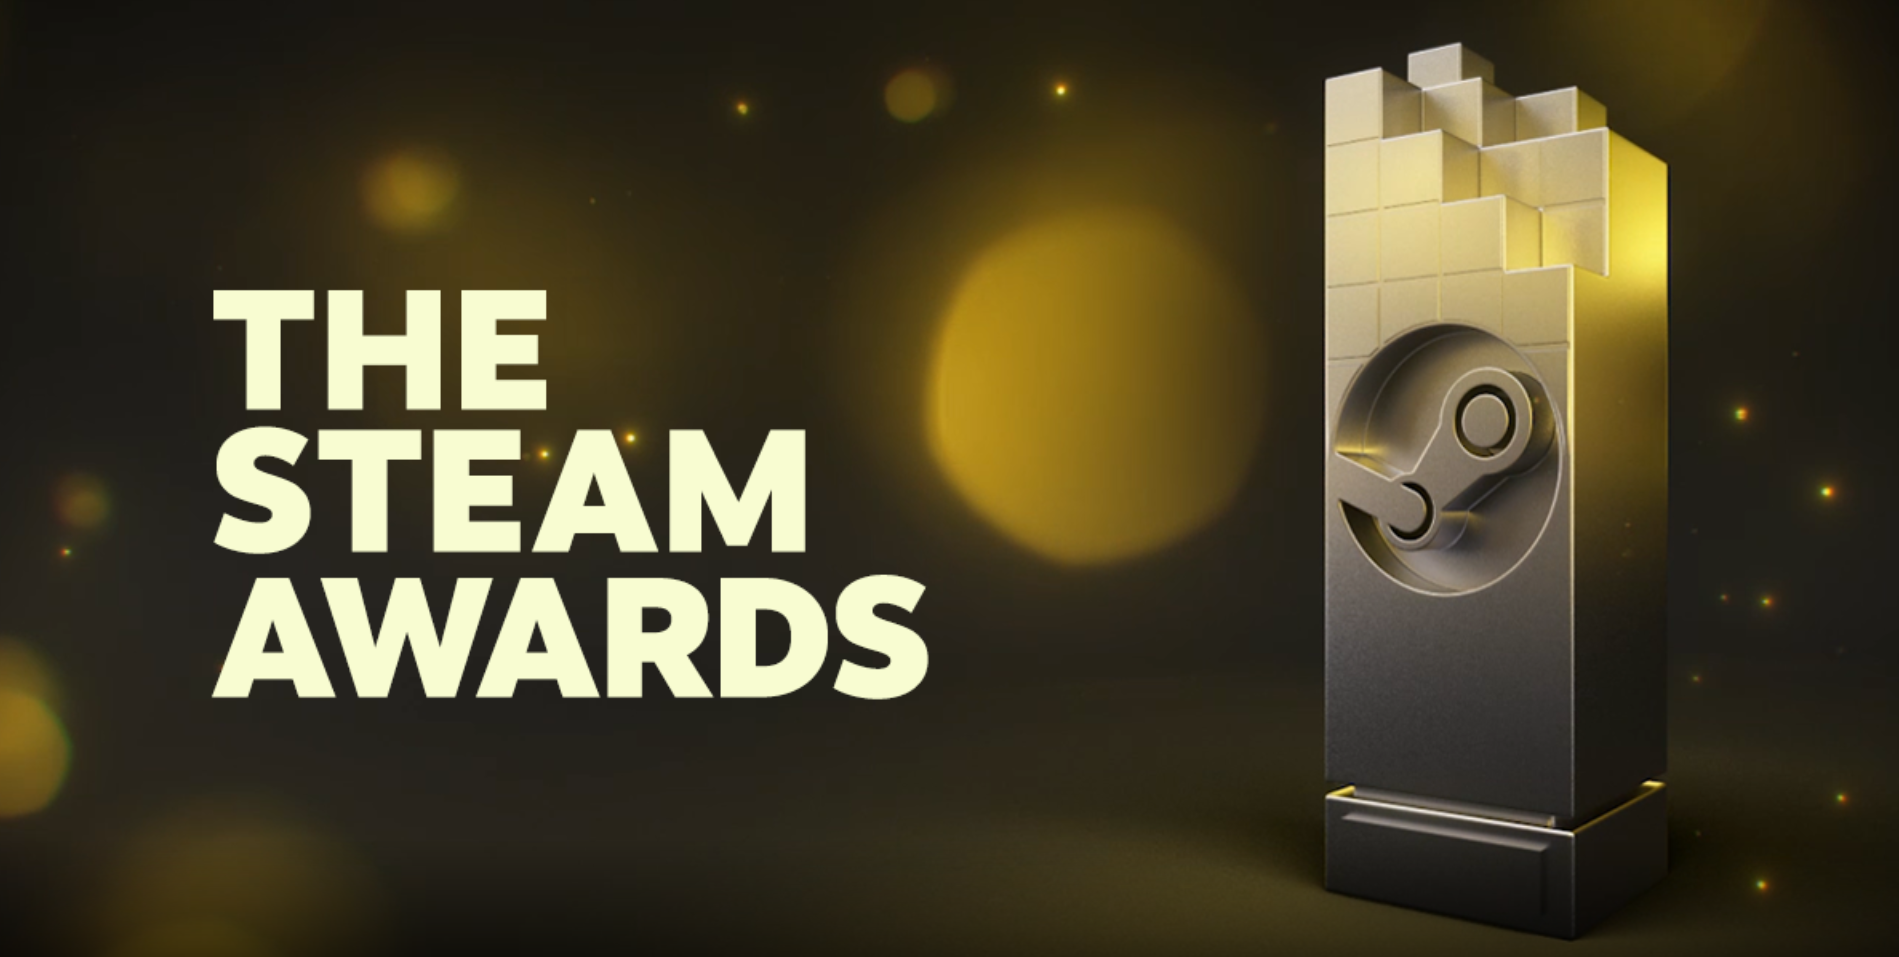 ประกาศผู้ชนะรางวัล Steam Awards ประจำปี 2020 Red Dead Redemption 2 ได้รับรางวัลหลายรางวัล